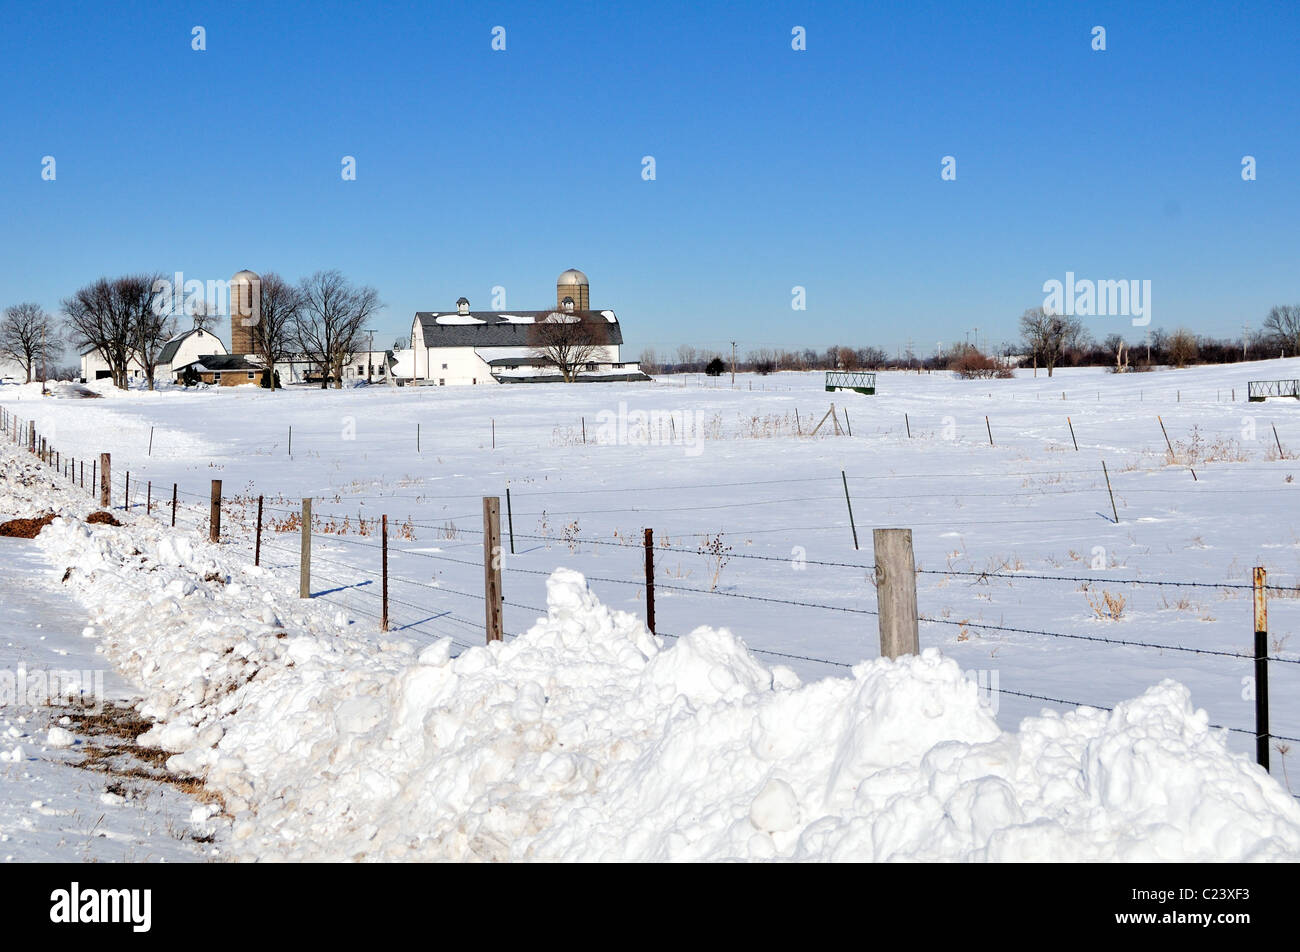 South Elgin, Illinois, USA. Eine Molkerei eingebettet mitten im Winter unter den schweren Schneefällen und Schneeverwehungen der jüngsten Sturm. Stockfoto